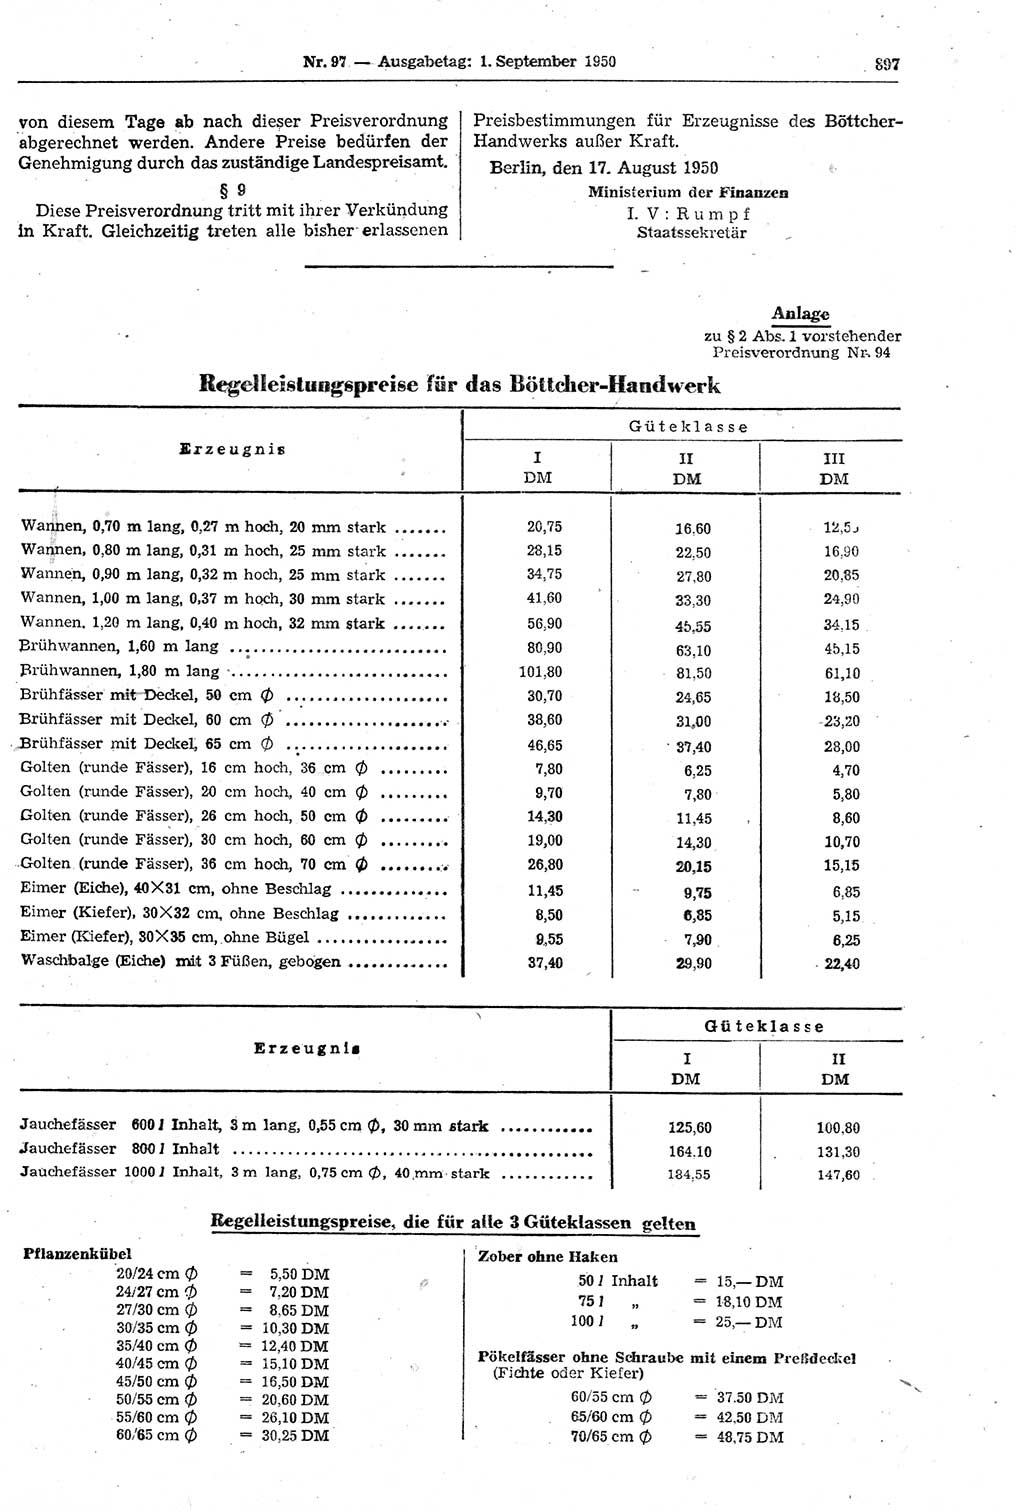 Gesetzblatt (GBl.) der Deutschen Demokratischen Republik (DDR) 1950, Seite 897 (GBl. DDR 1950, S. 897)